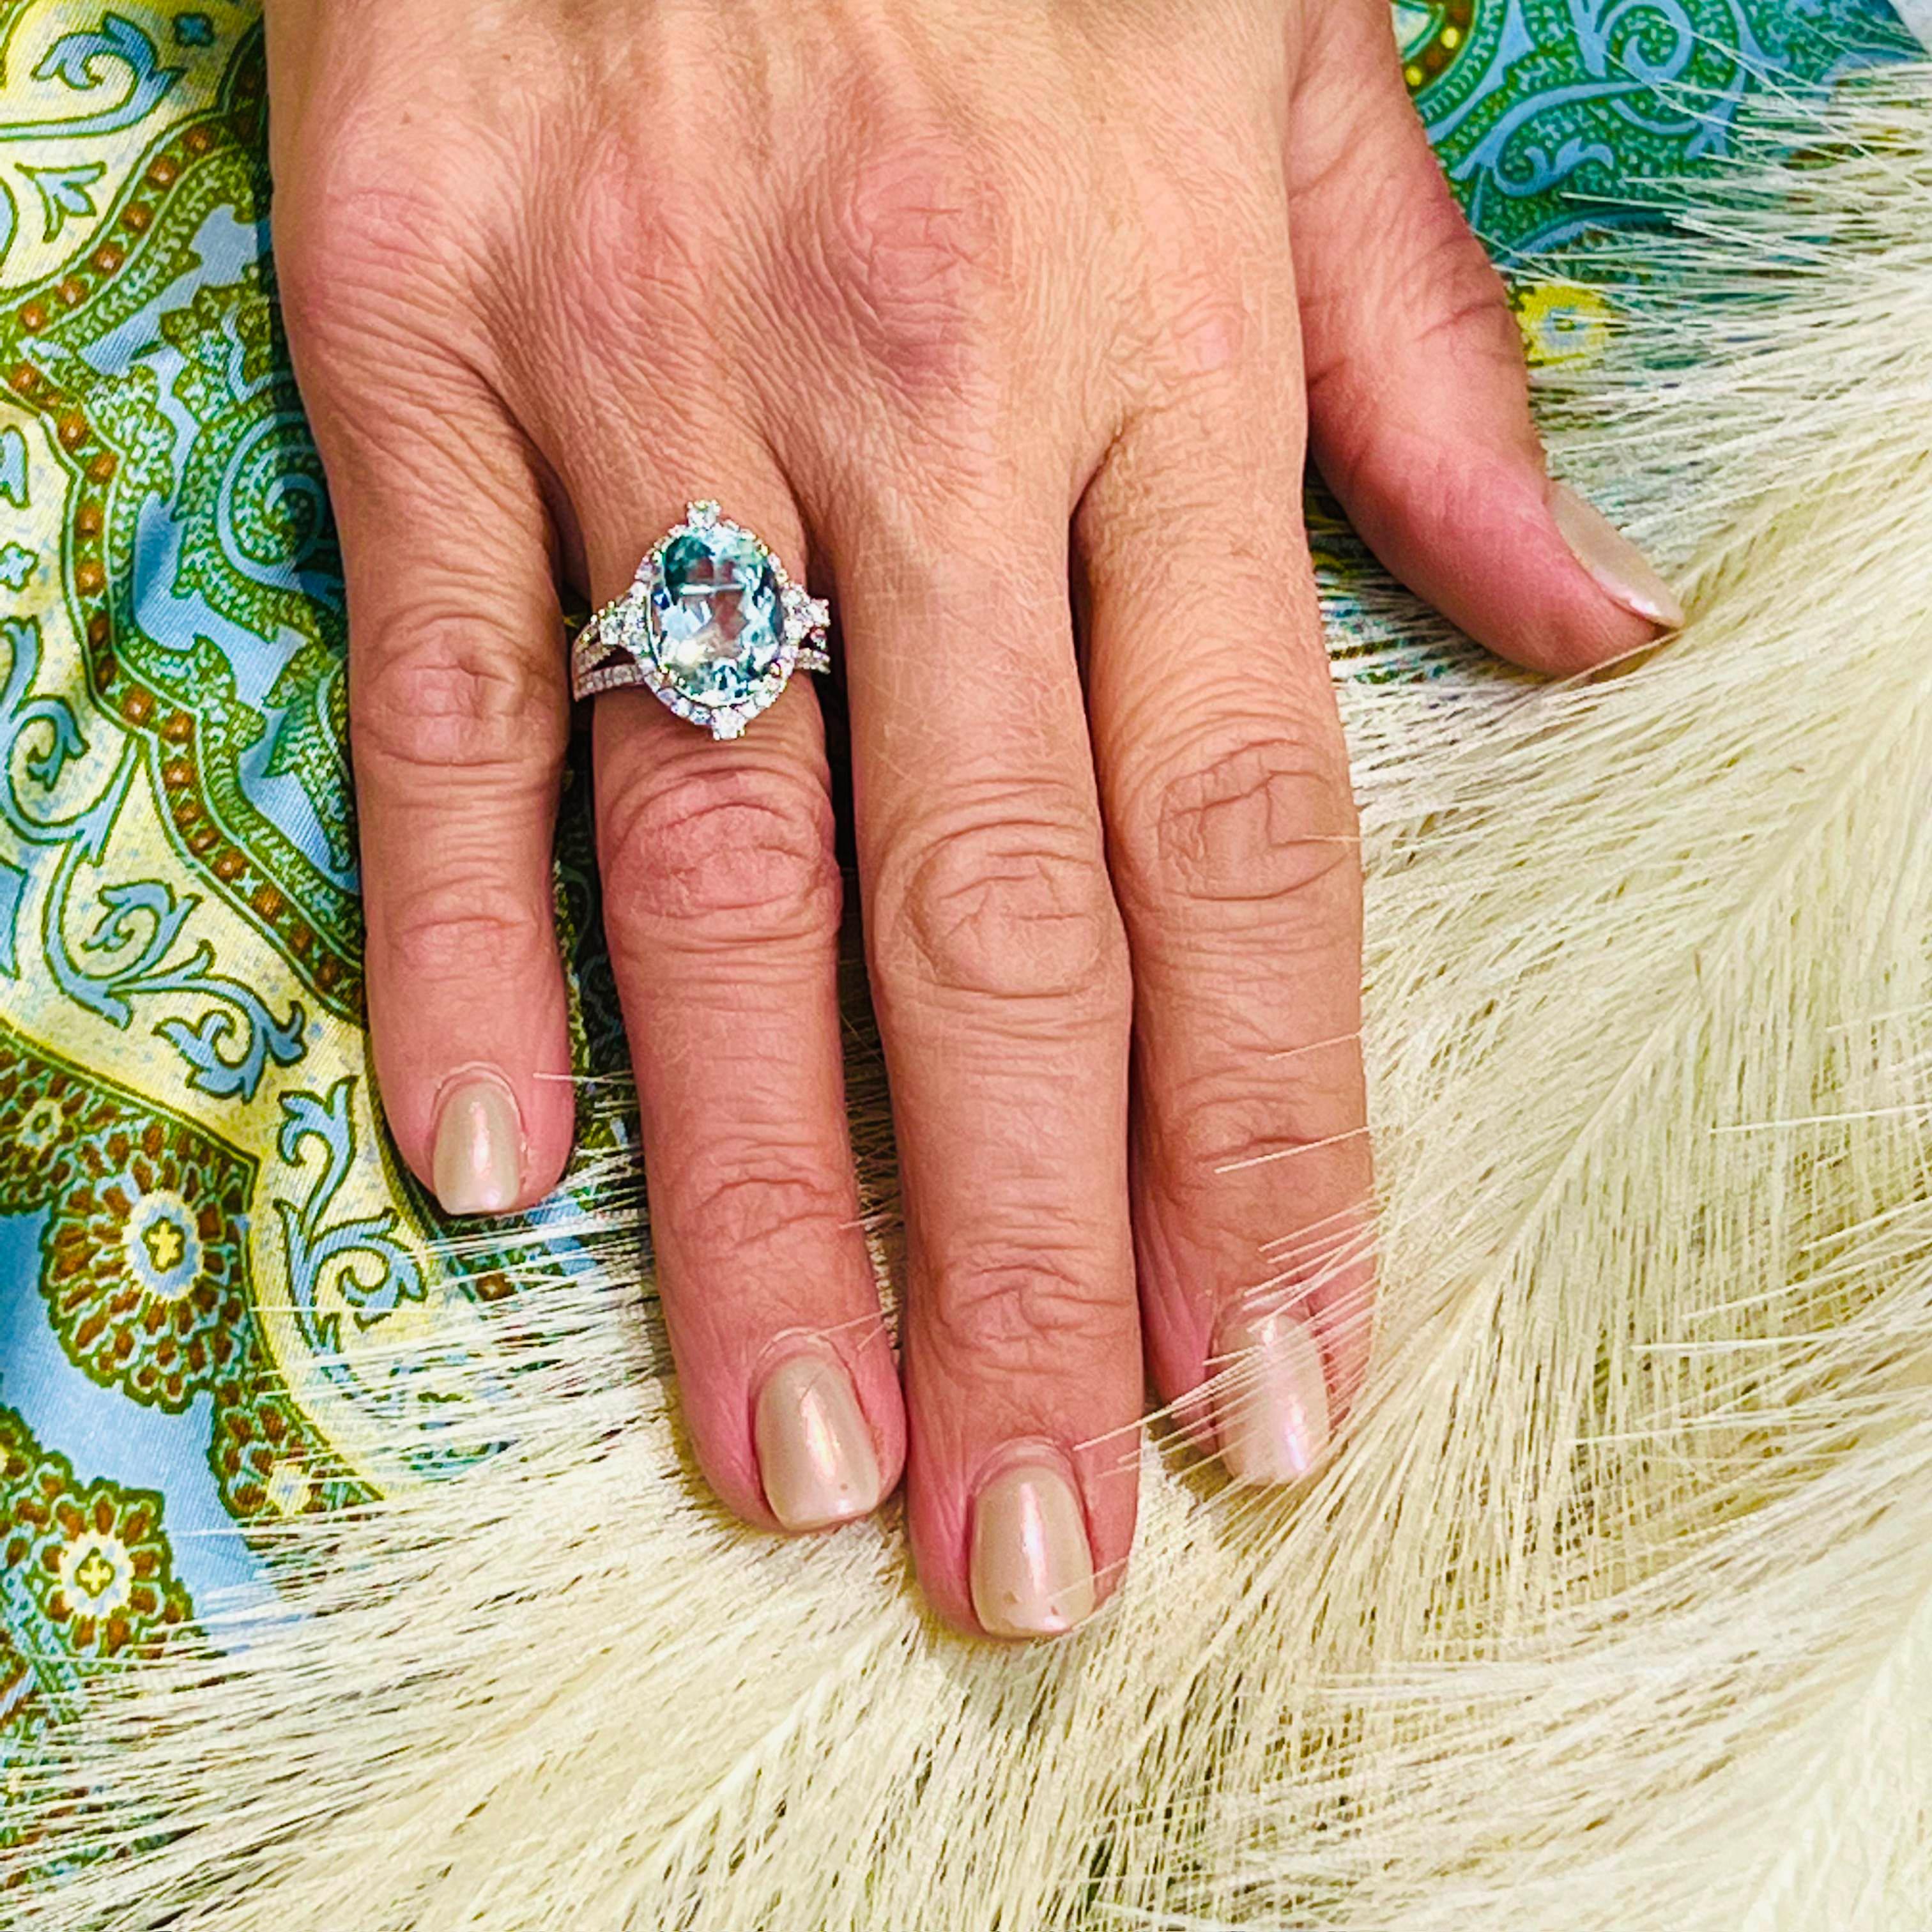 Natürlicher Aquamarin Diamant Ring Größe 6,5 14k W Gold 6,58 TCW zertifiziert $5.975 217093

Dies ist ein einzigartiges, maßgeschneidertes, glamouröses Schmuckstück!

Nichts sagt mehr 